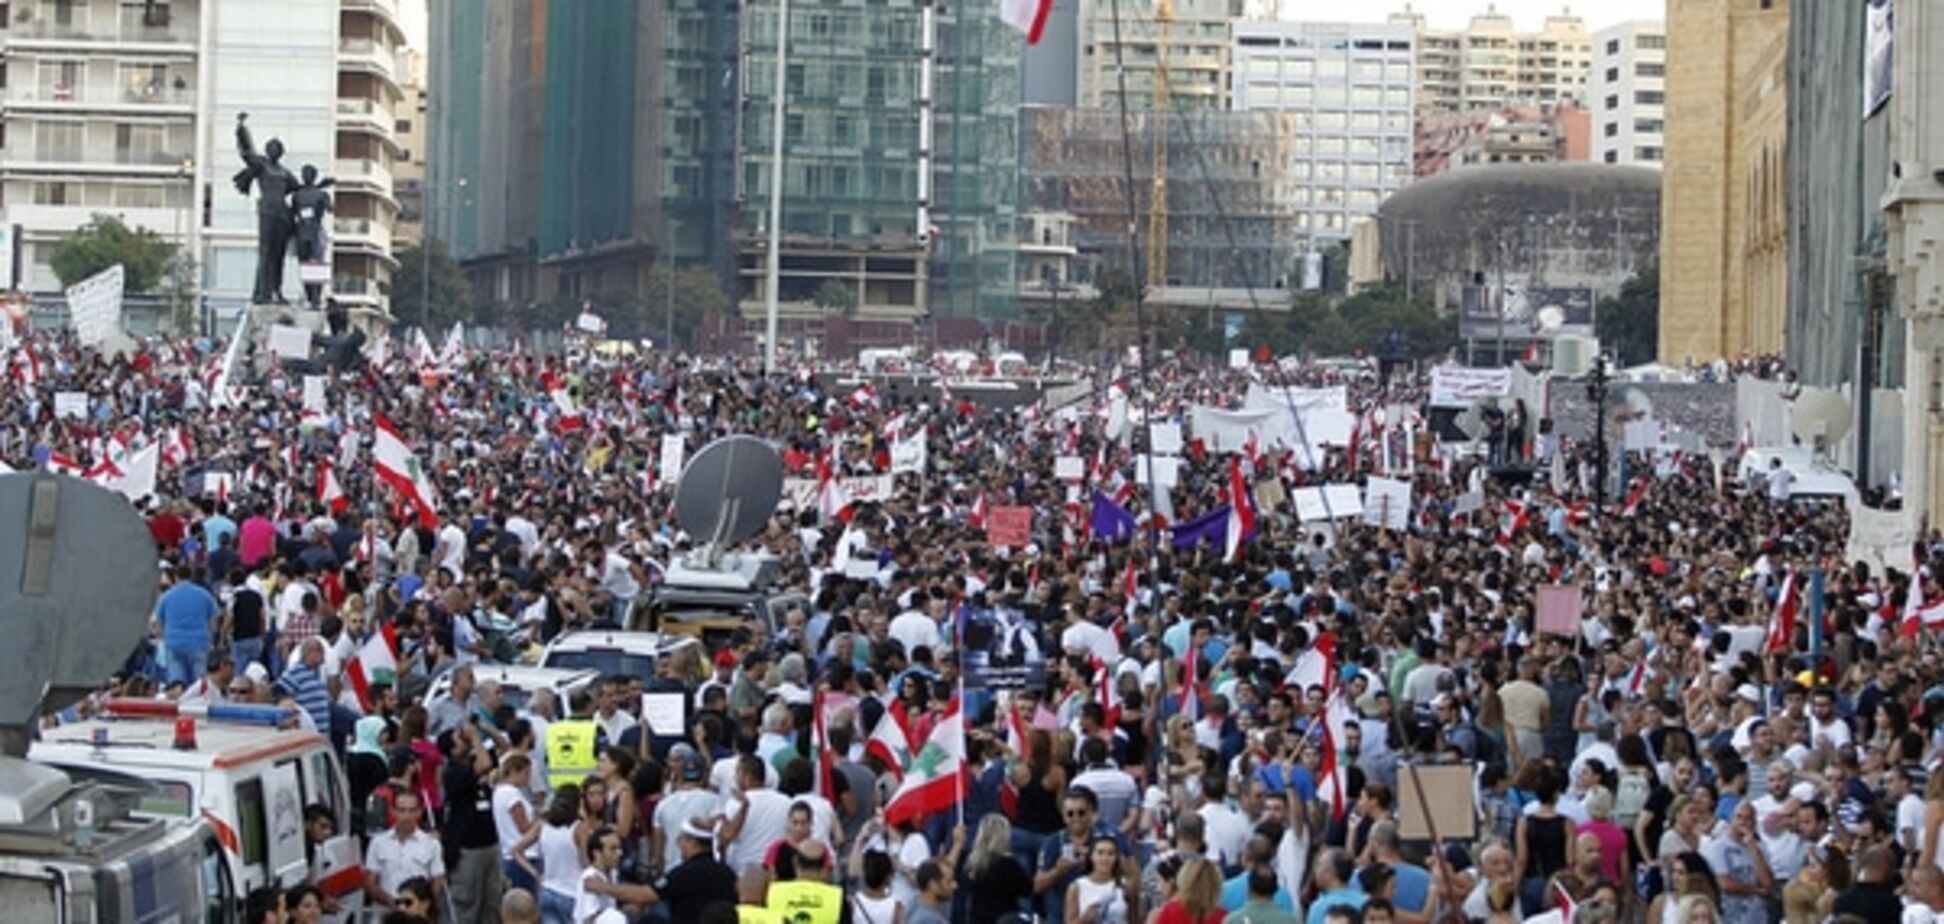 'Від вас смердить!': У Бейруті розпочався 'сміттєвий' 'Майдан'. Фото революції